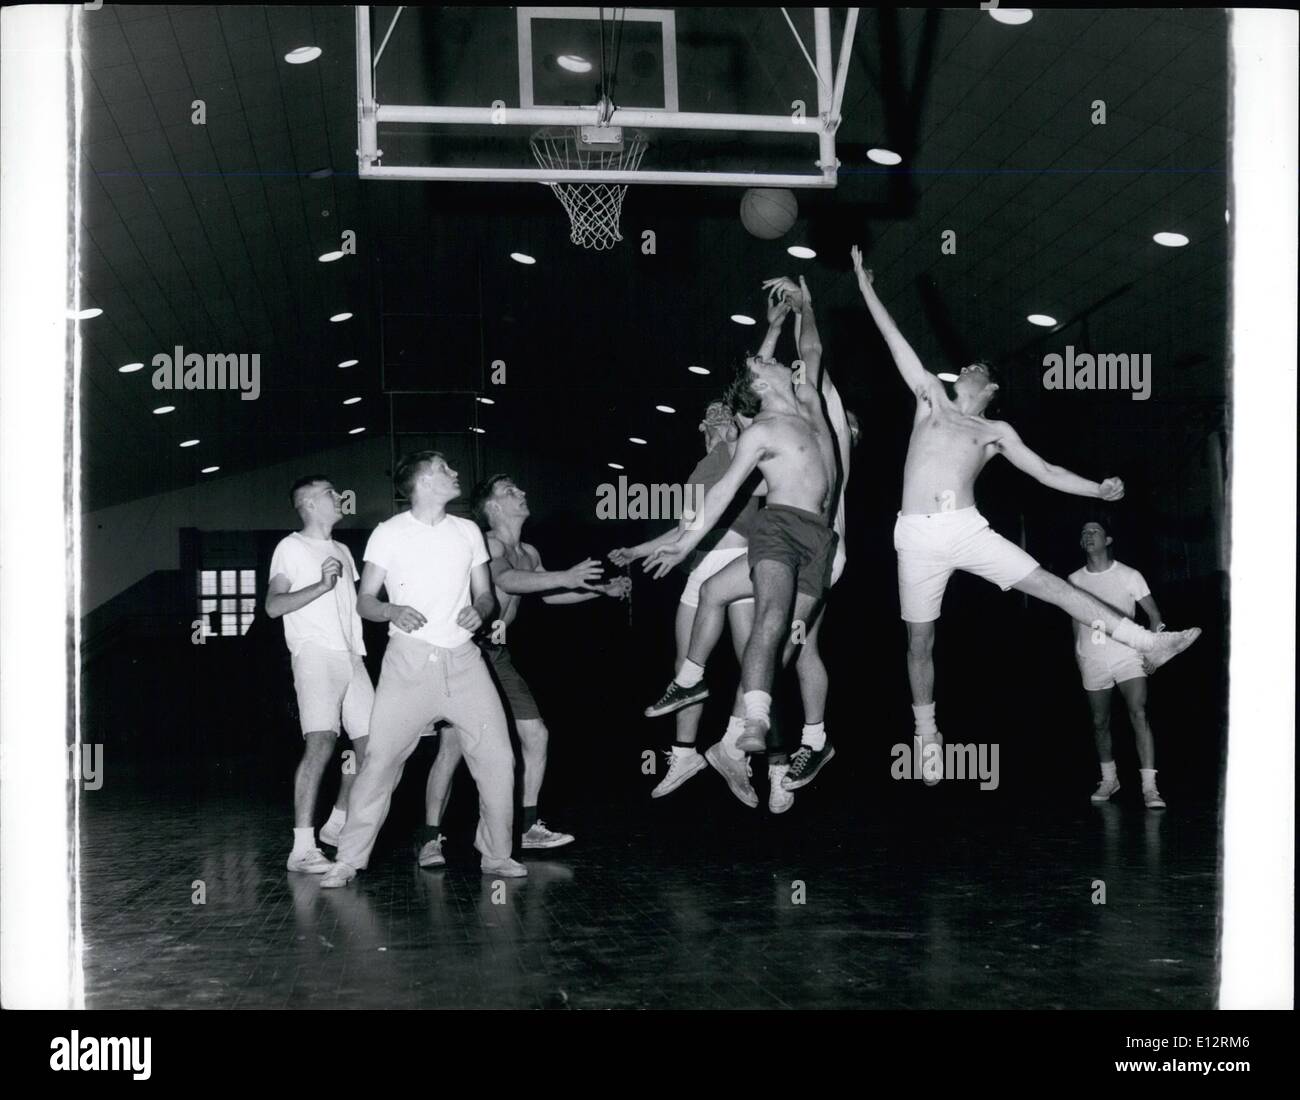 24 février 2012 - Un jeu de basket-ball au cours de session d'éducation physique à Princeton's Dillon Gymnasium. Banque D'Images